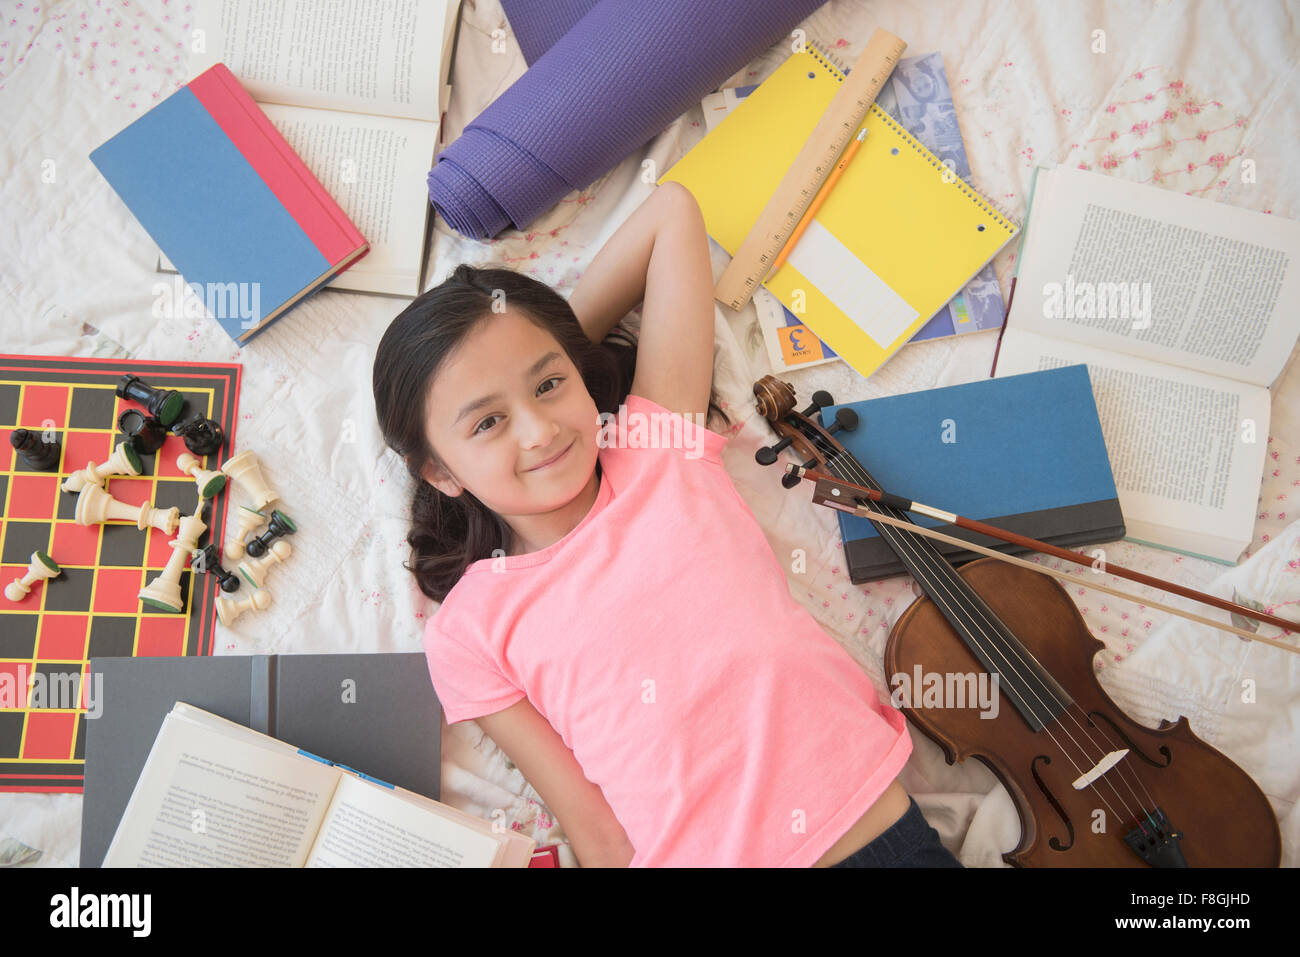 Chica colocando en el suelo con pasatiempos y deberes Foto de stock